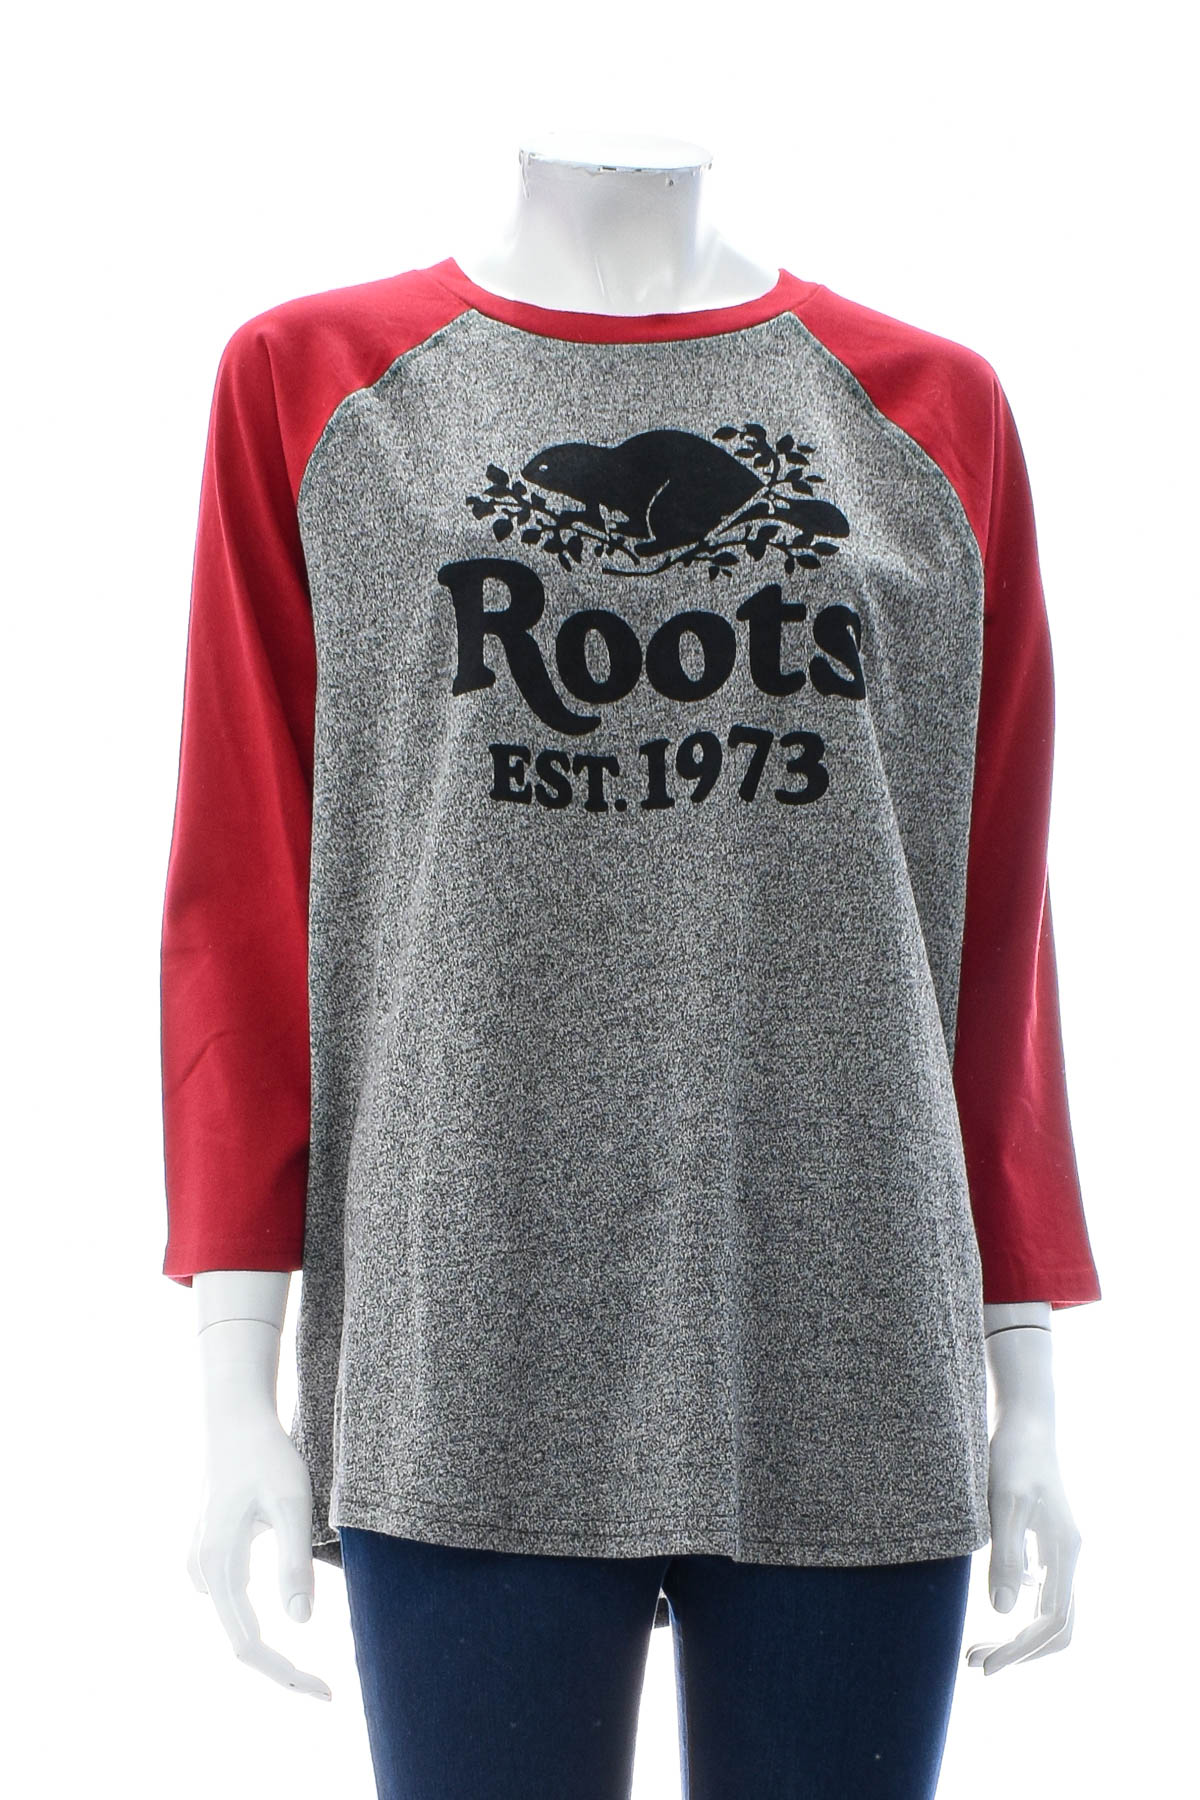 Γυναικεία μπλούζα - Roots - 0